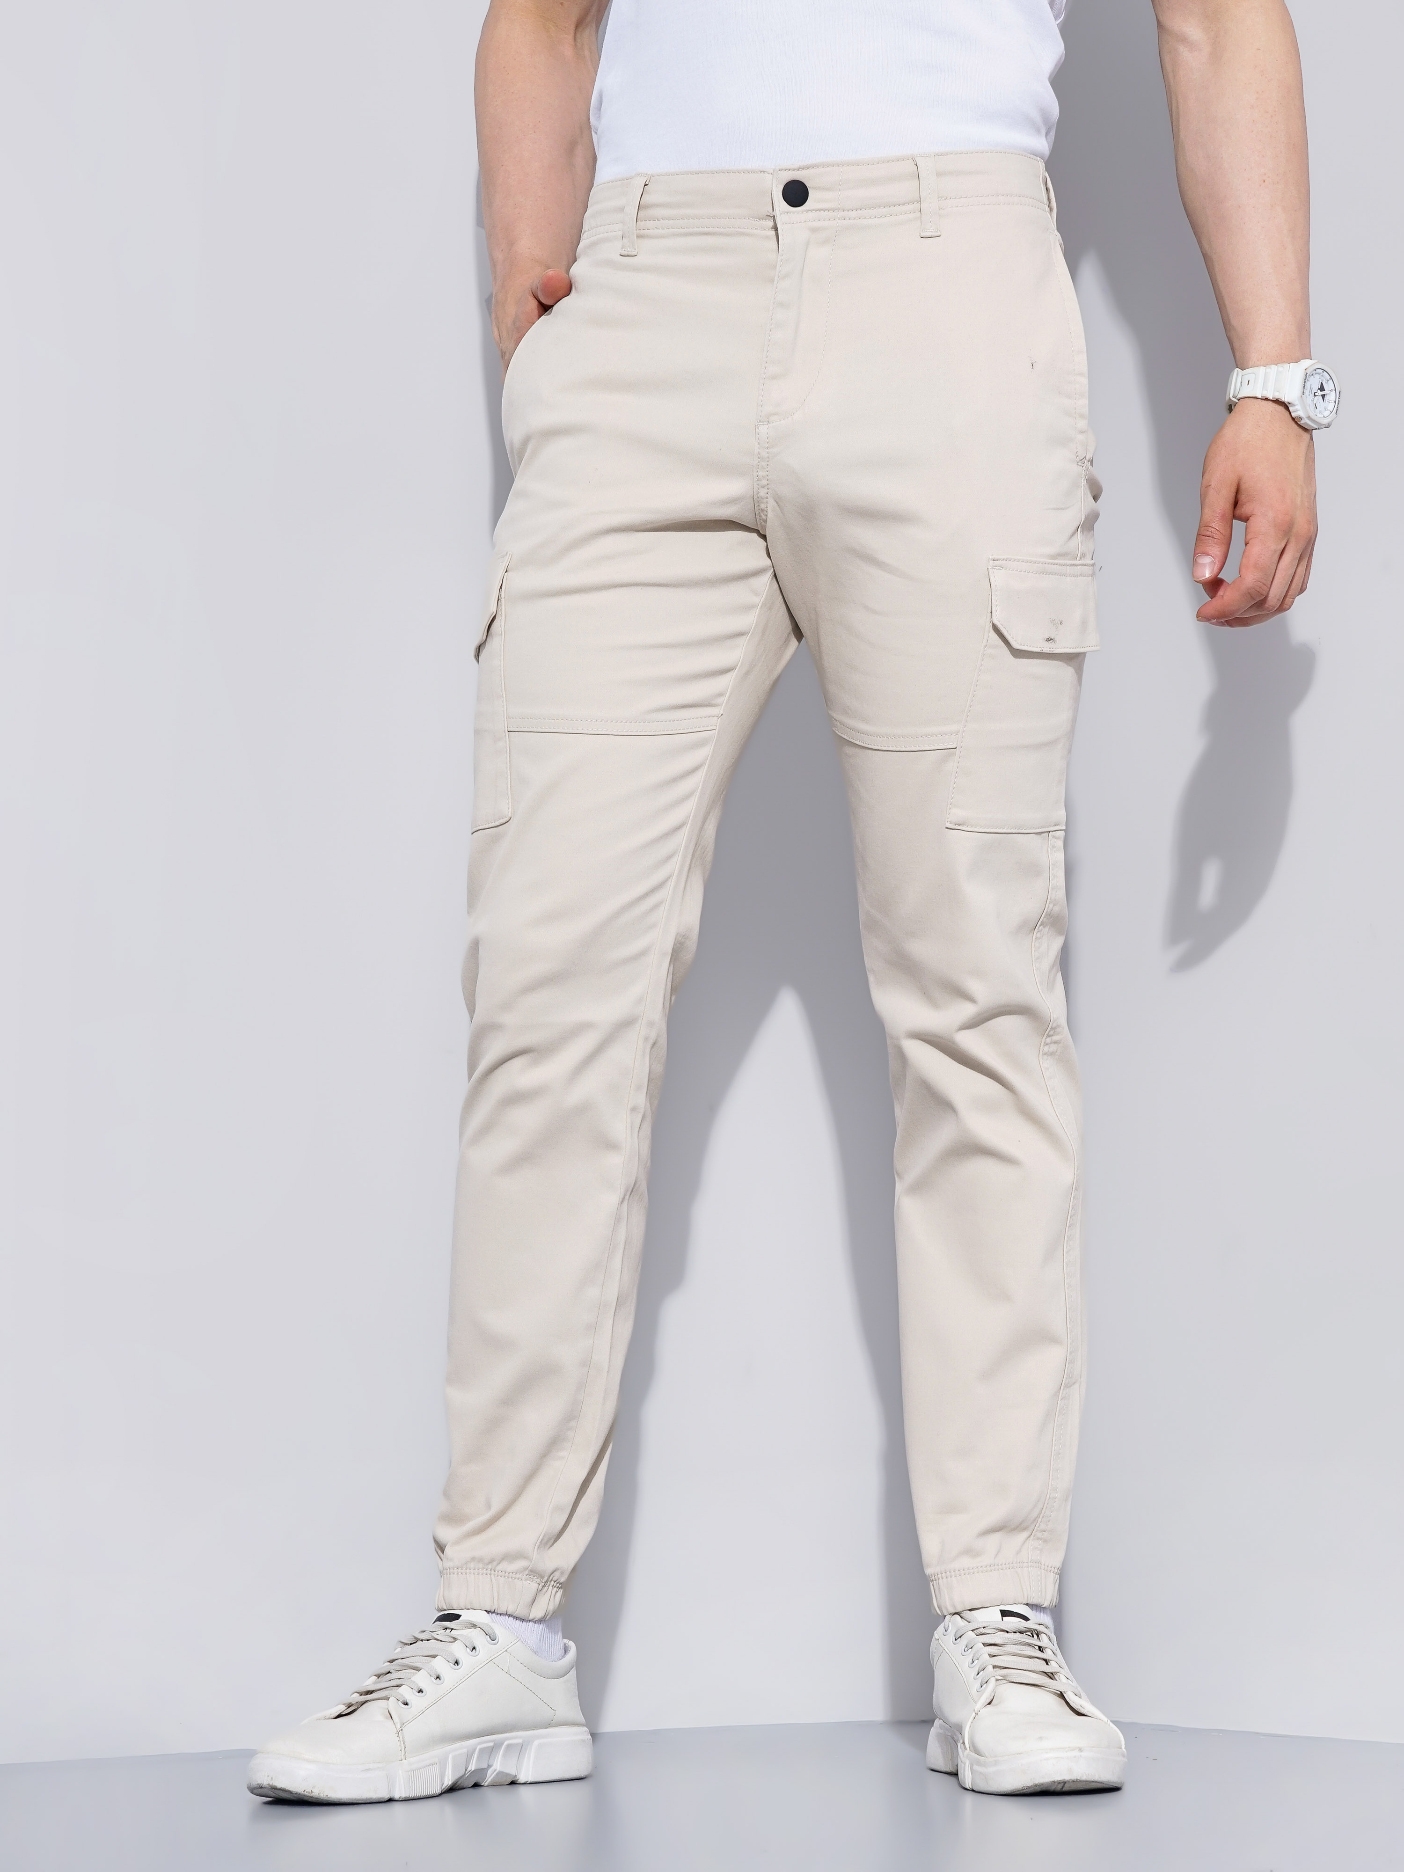 Buy celio* Grey Regular Fit Cargos for Men's Online @ Tata CLiQ